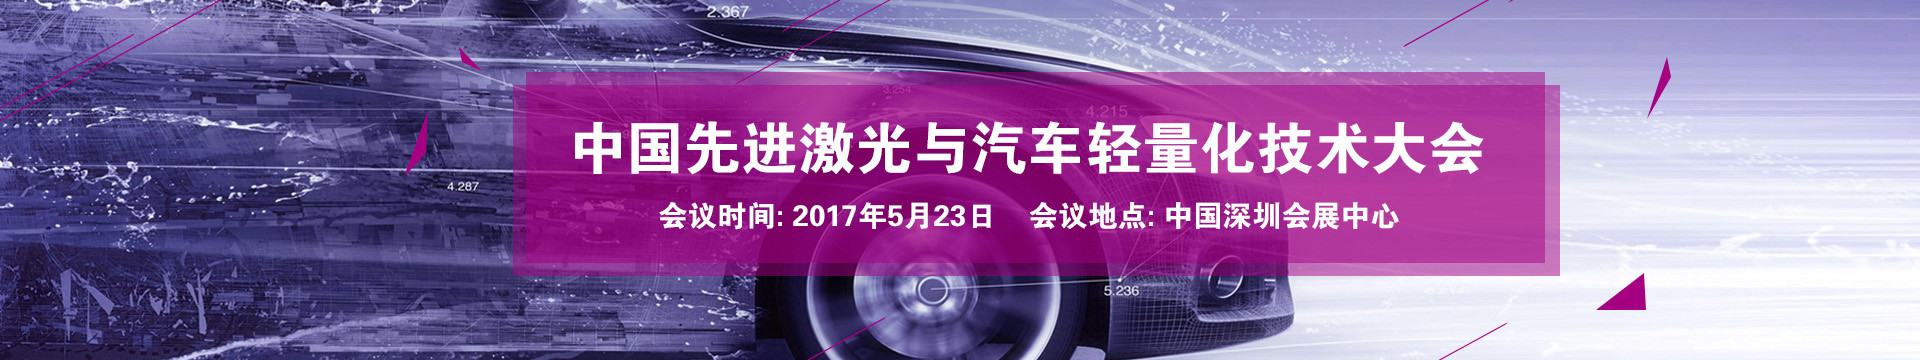 2017中国先进激光与汽车轻量化技术大会